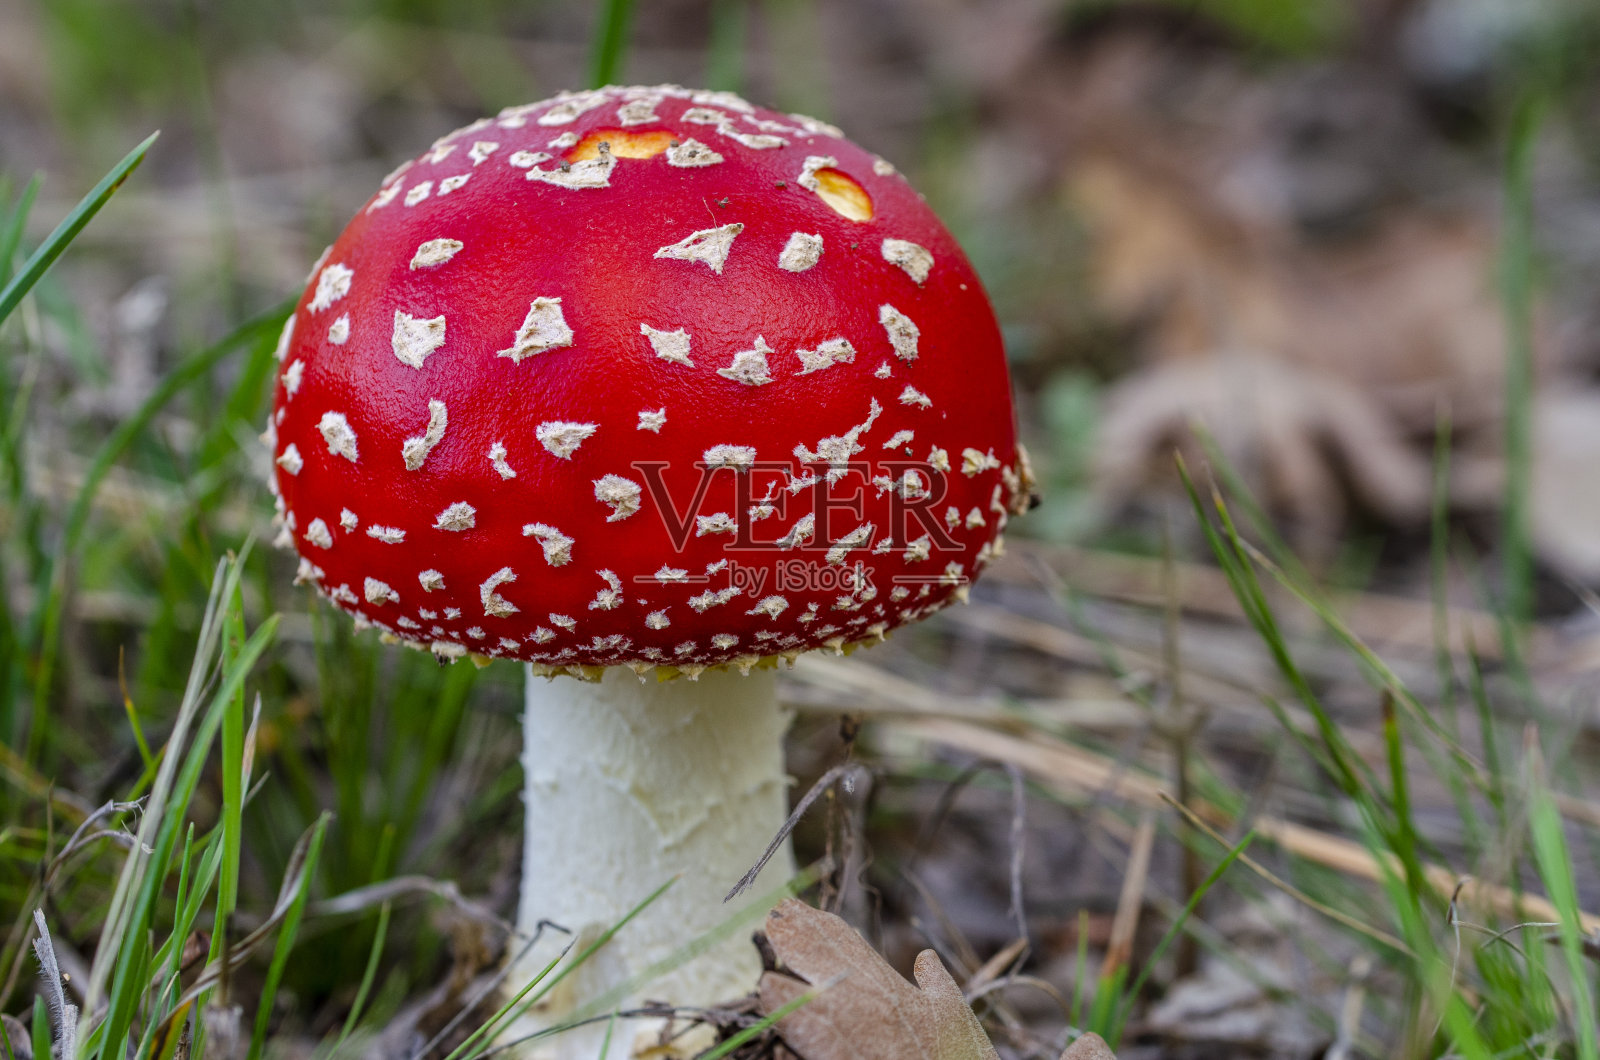 自然界中一种毒蘑菇的特写照片照片摄影图片